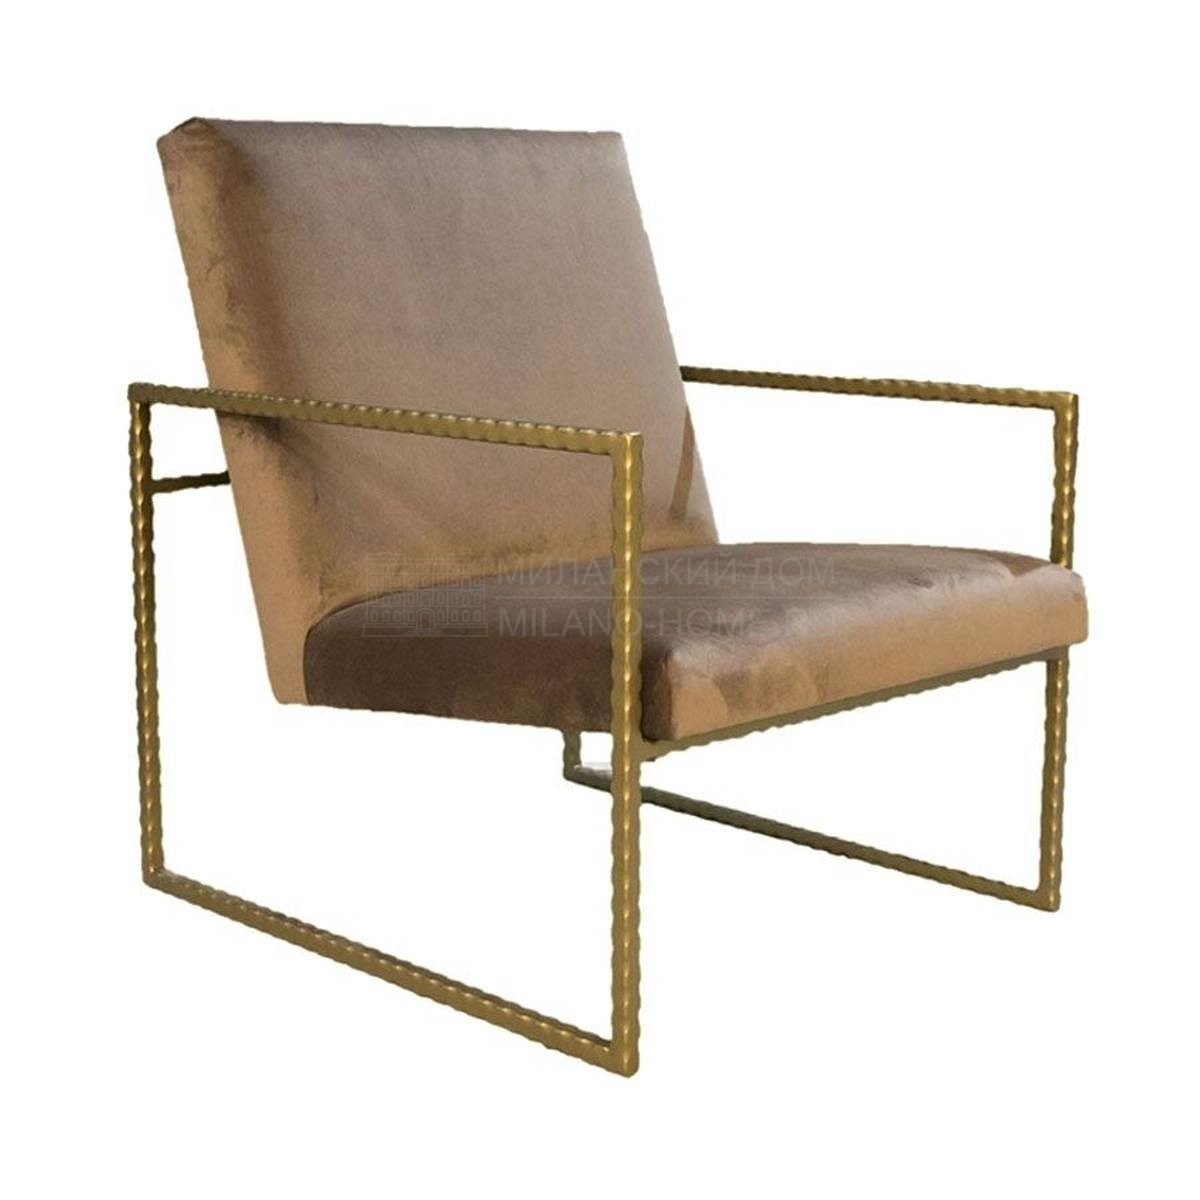 Кресло H-3075 armchair из Испания фабрики GUADARTE